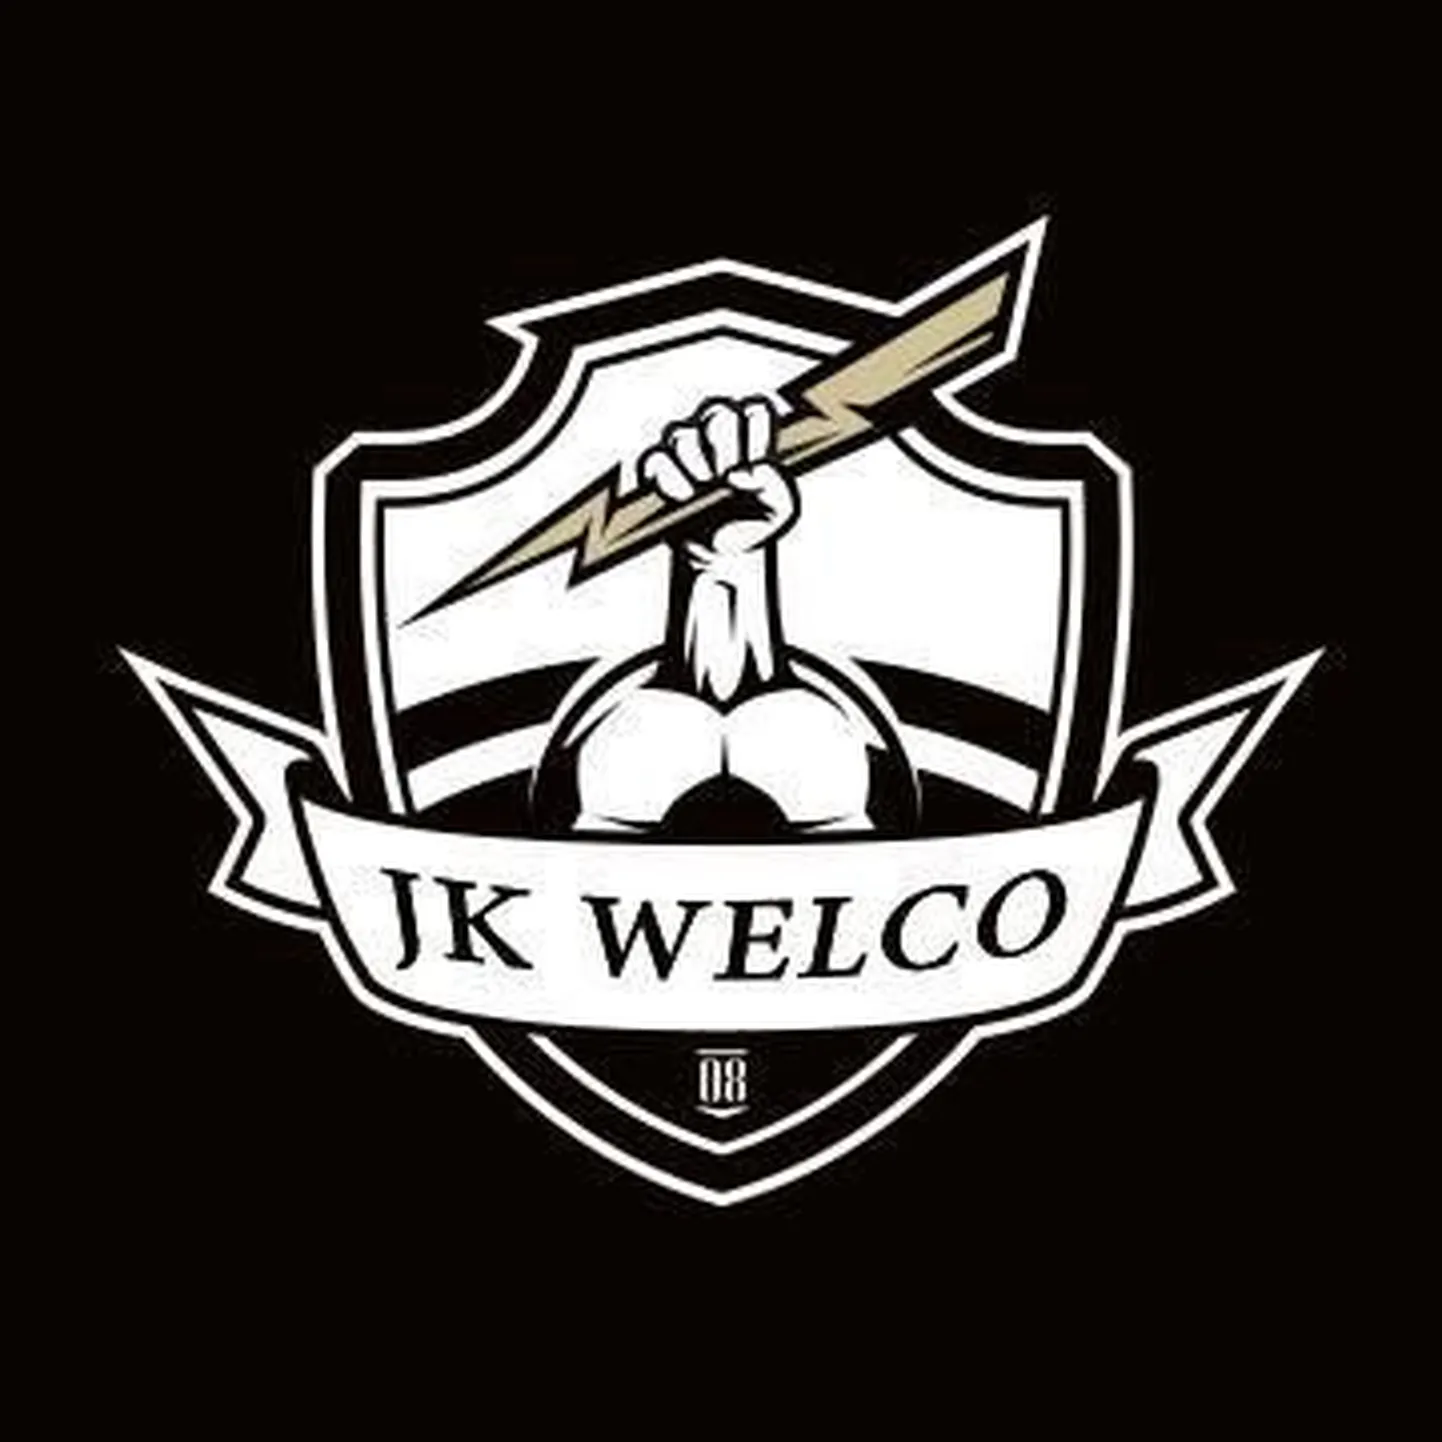 JK Welco uus logo.